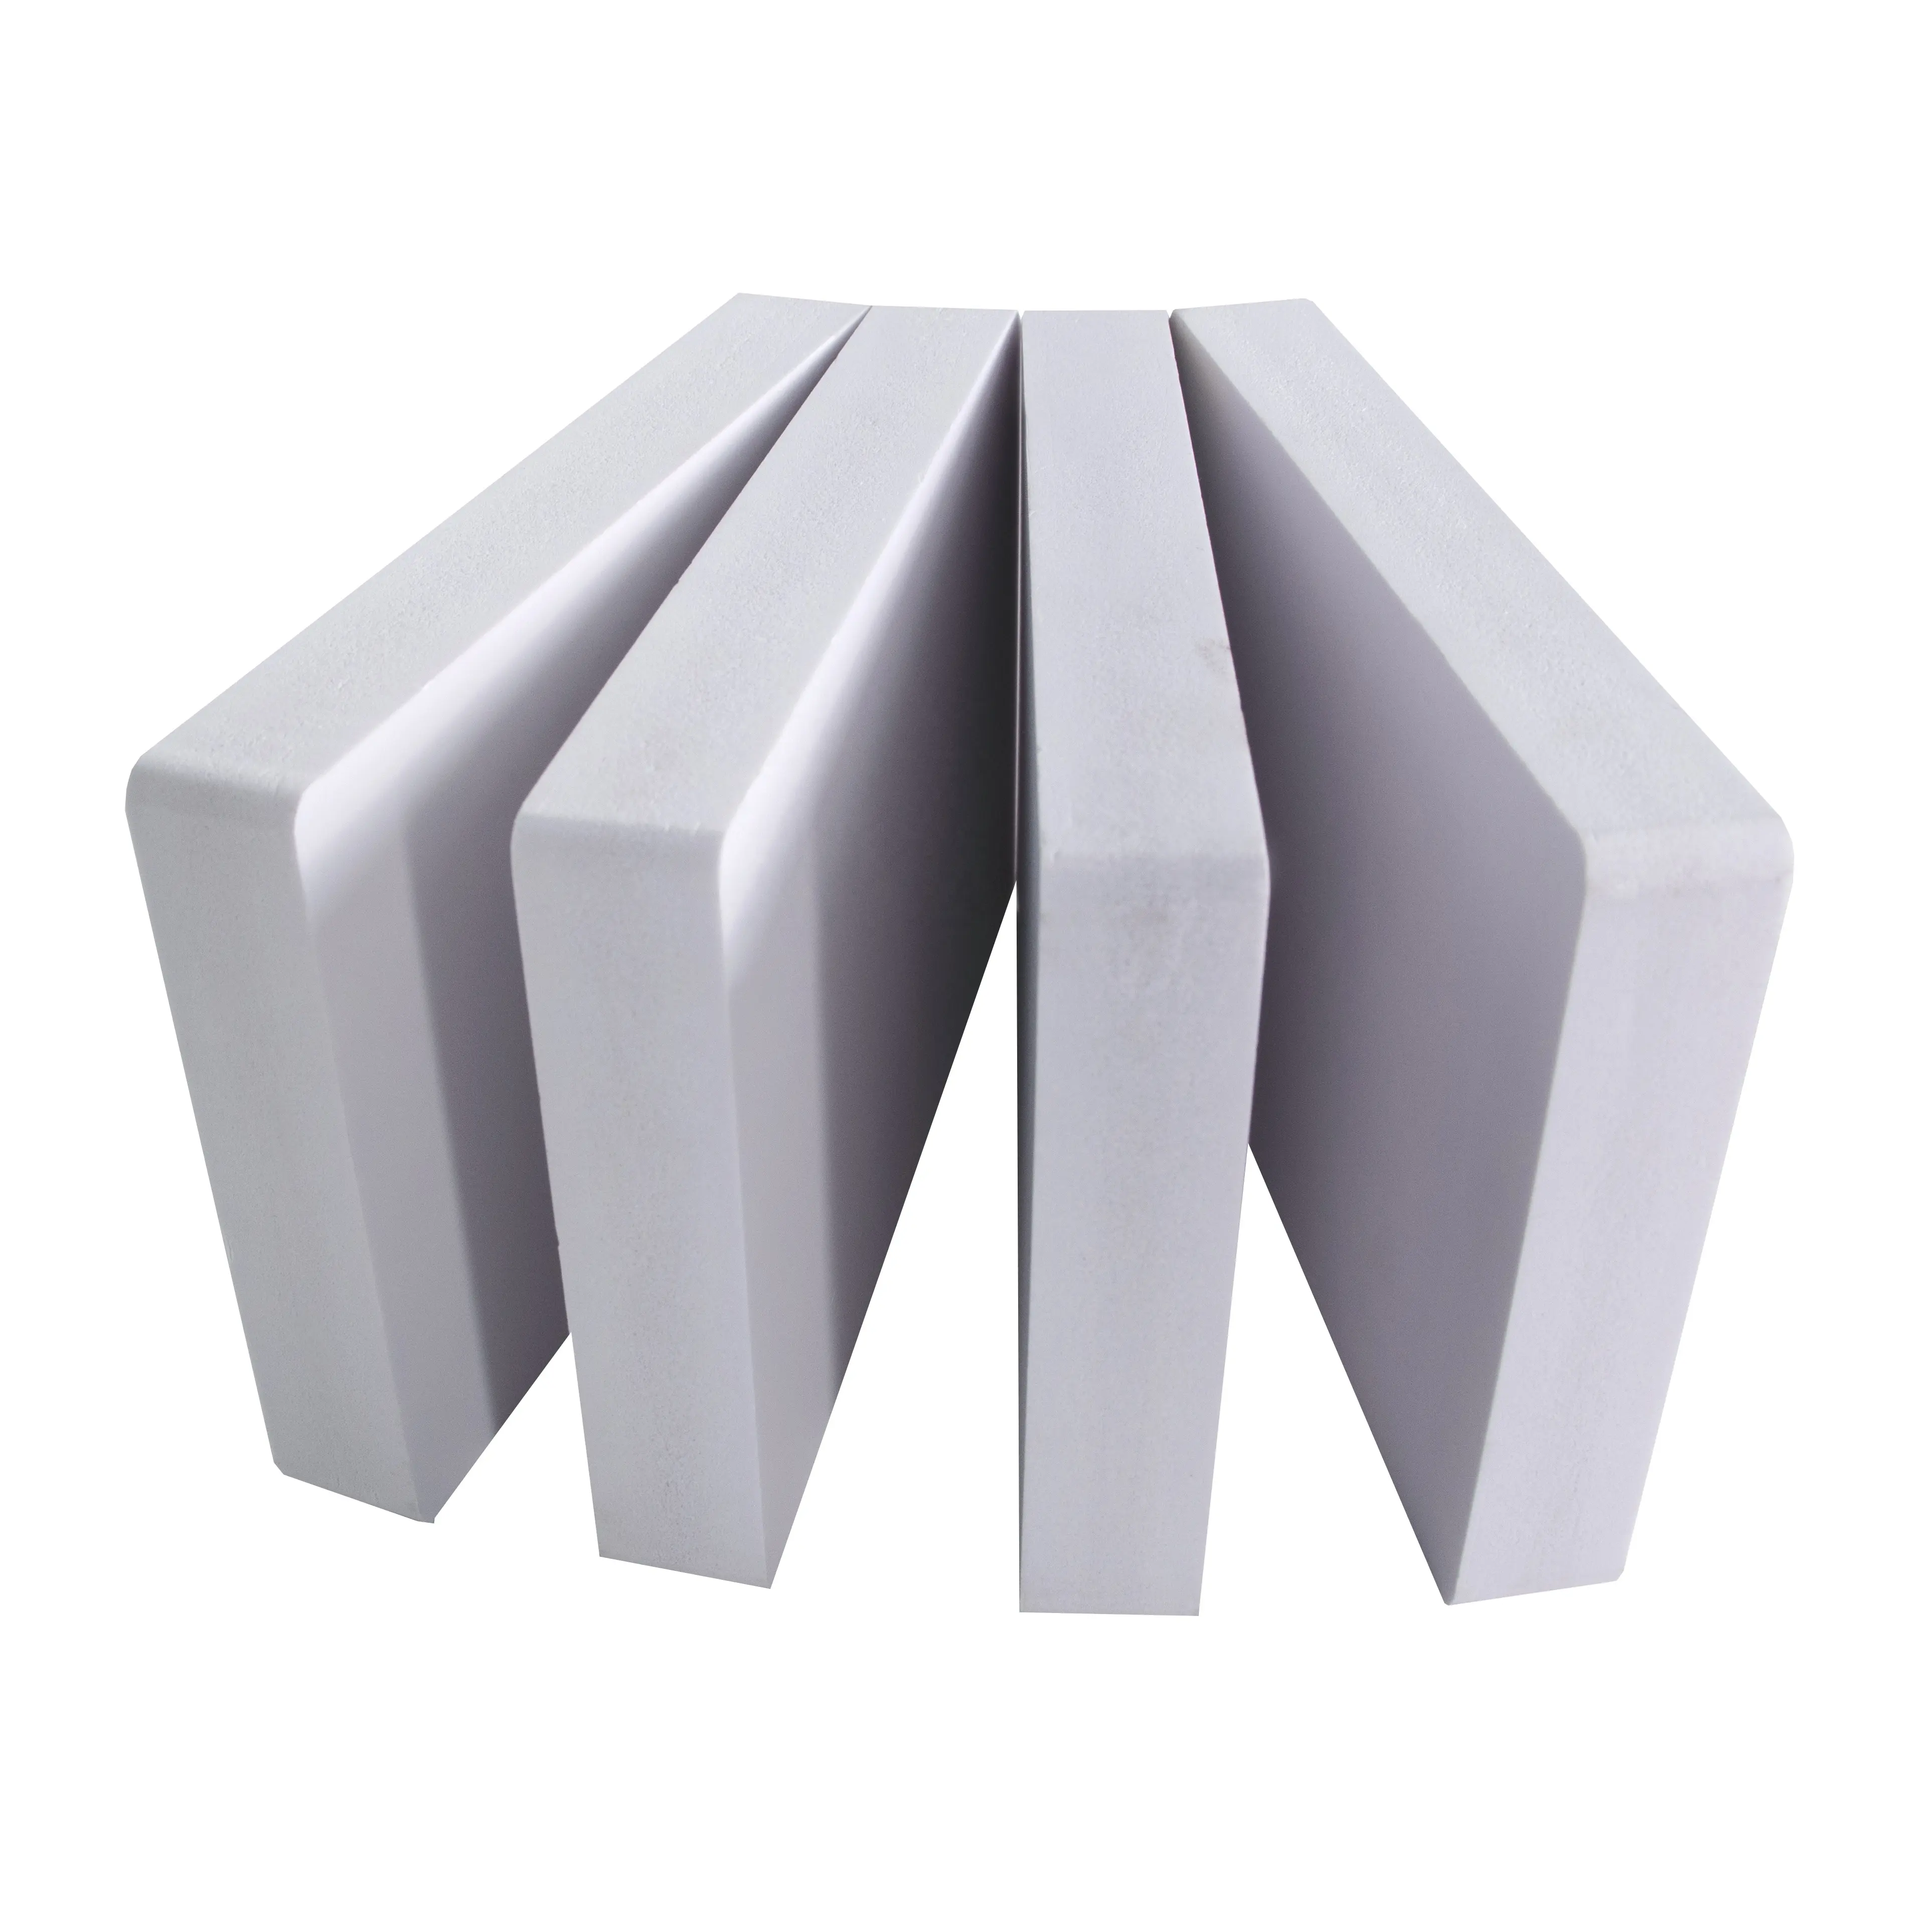 PVC-Schaumstoff platte 4x8 30mm dicke PVC-Schaumstoff platte für Werbung